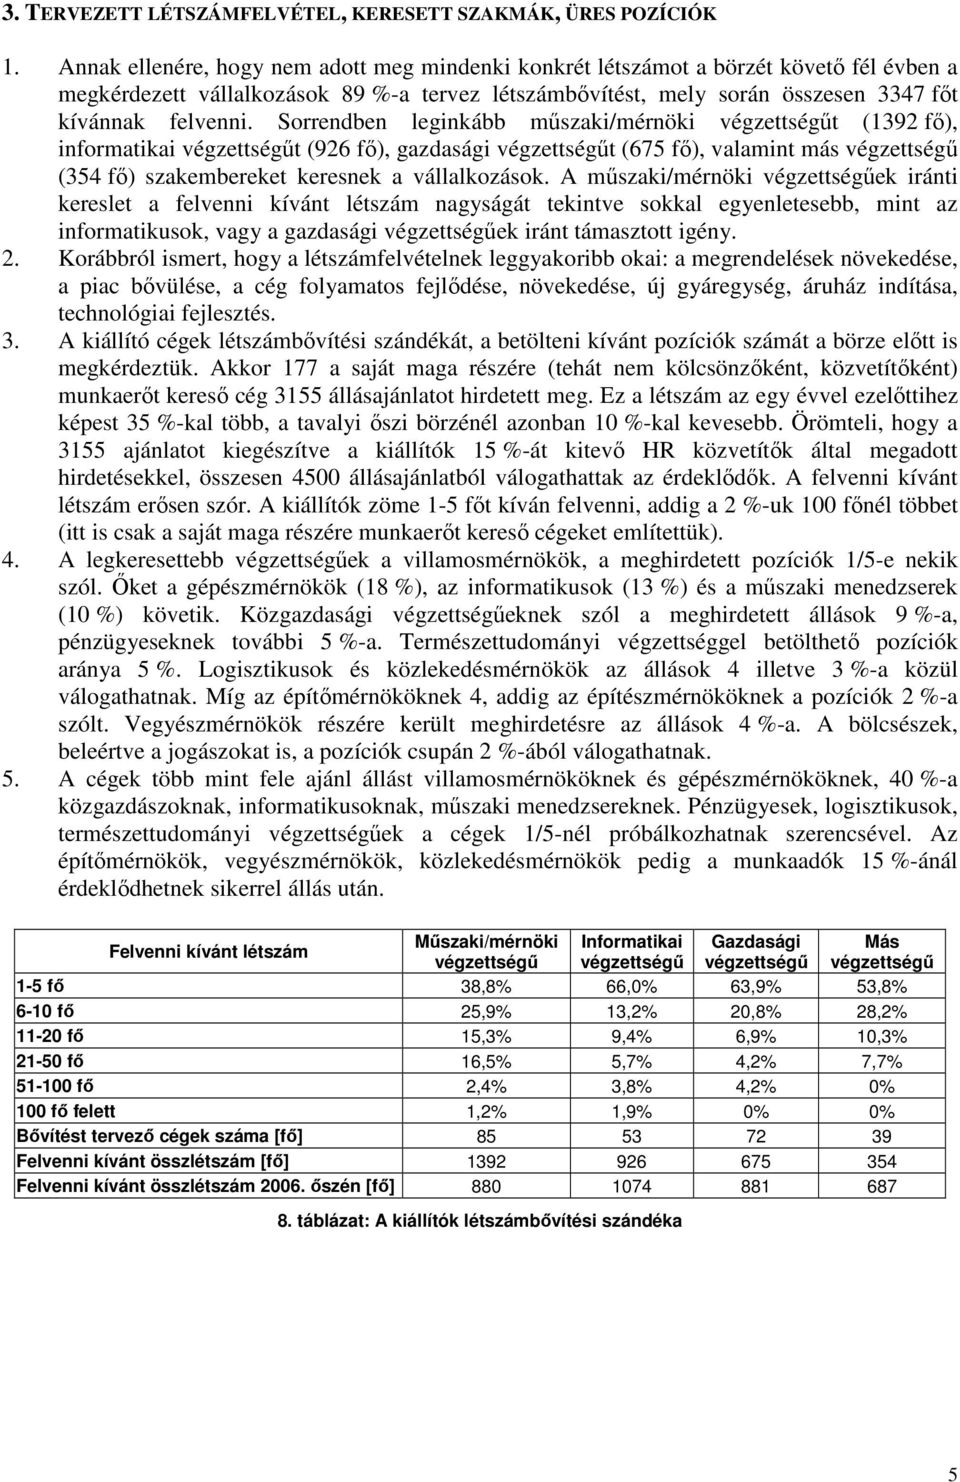 Sorrendben leginkább mőszaki/mérnöki végzettségőt (1392 fı), informatikai végzettségőt (926 fı), gazdasági végzettségőt (675 fı), valamint más végzettségő (354 fı) szakembereket keresnek a